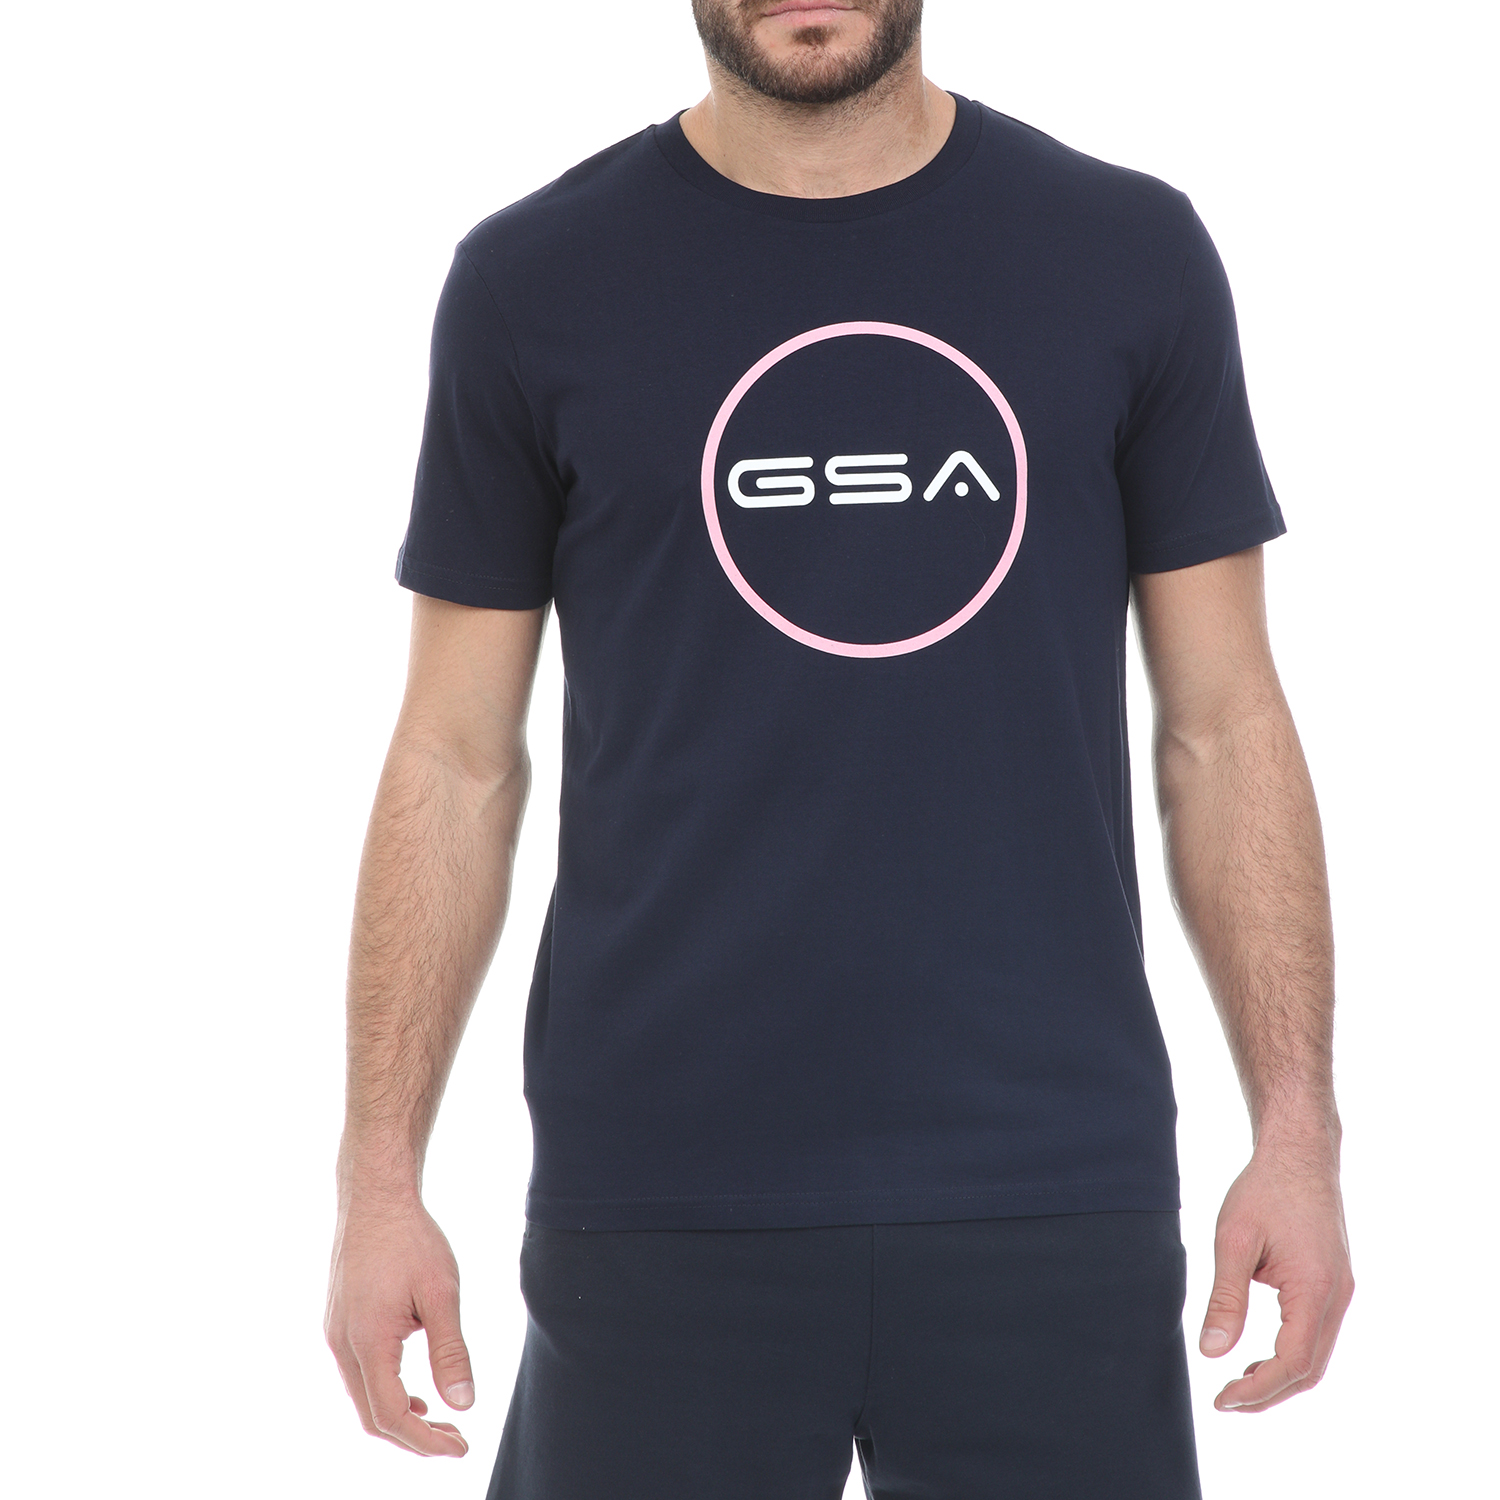 Ανδρικά/Ρούχα/Μπλούζες/Κοντομάνικες GSA - Ανδρικό t-shirt GSA ORGANIC PLUS SUPERLOGO TRE μπλε